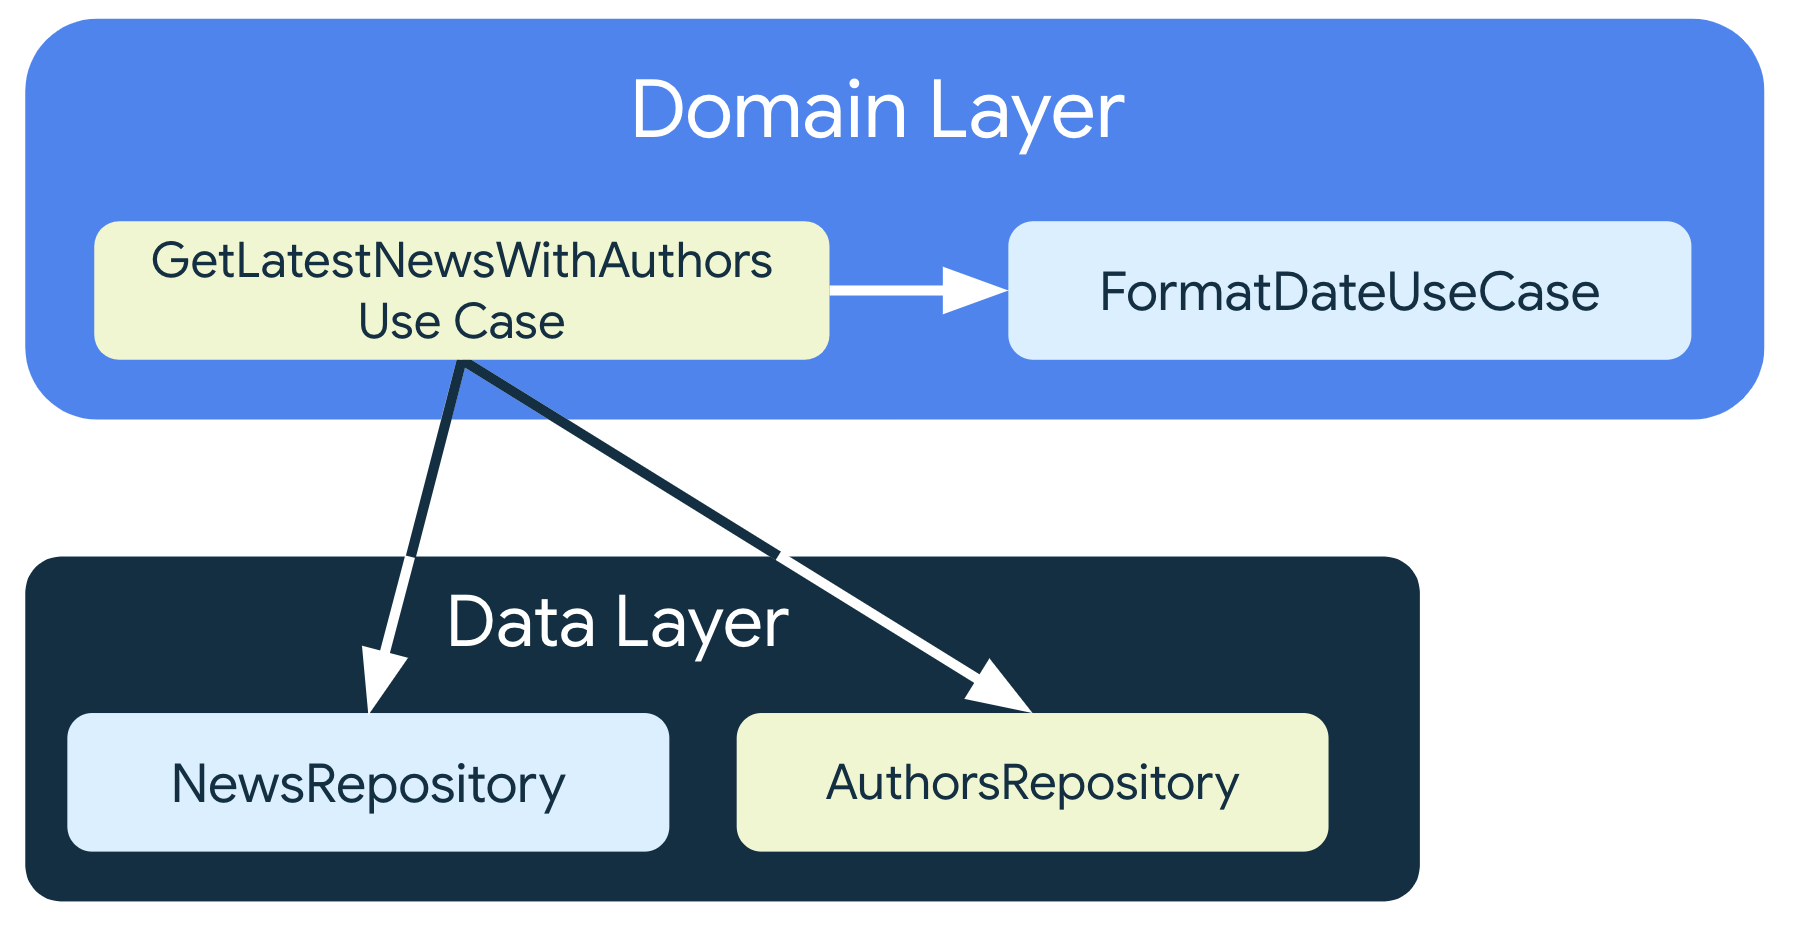 GetLatestNewsWithAuthorsUseCase dépend des classes de dépôt de la couche de données, mais aussi de FormatDataUseCase, une autre classe de cas d'utilisation qui se trouve également dans la couche de domaine.